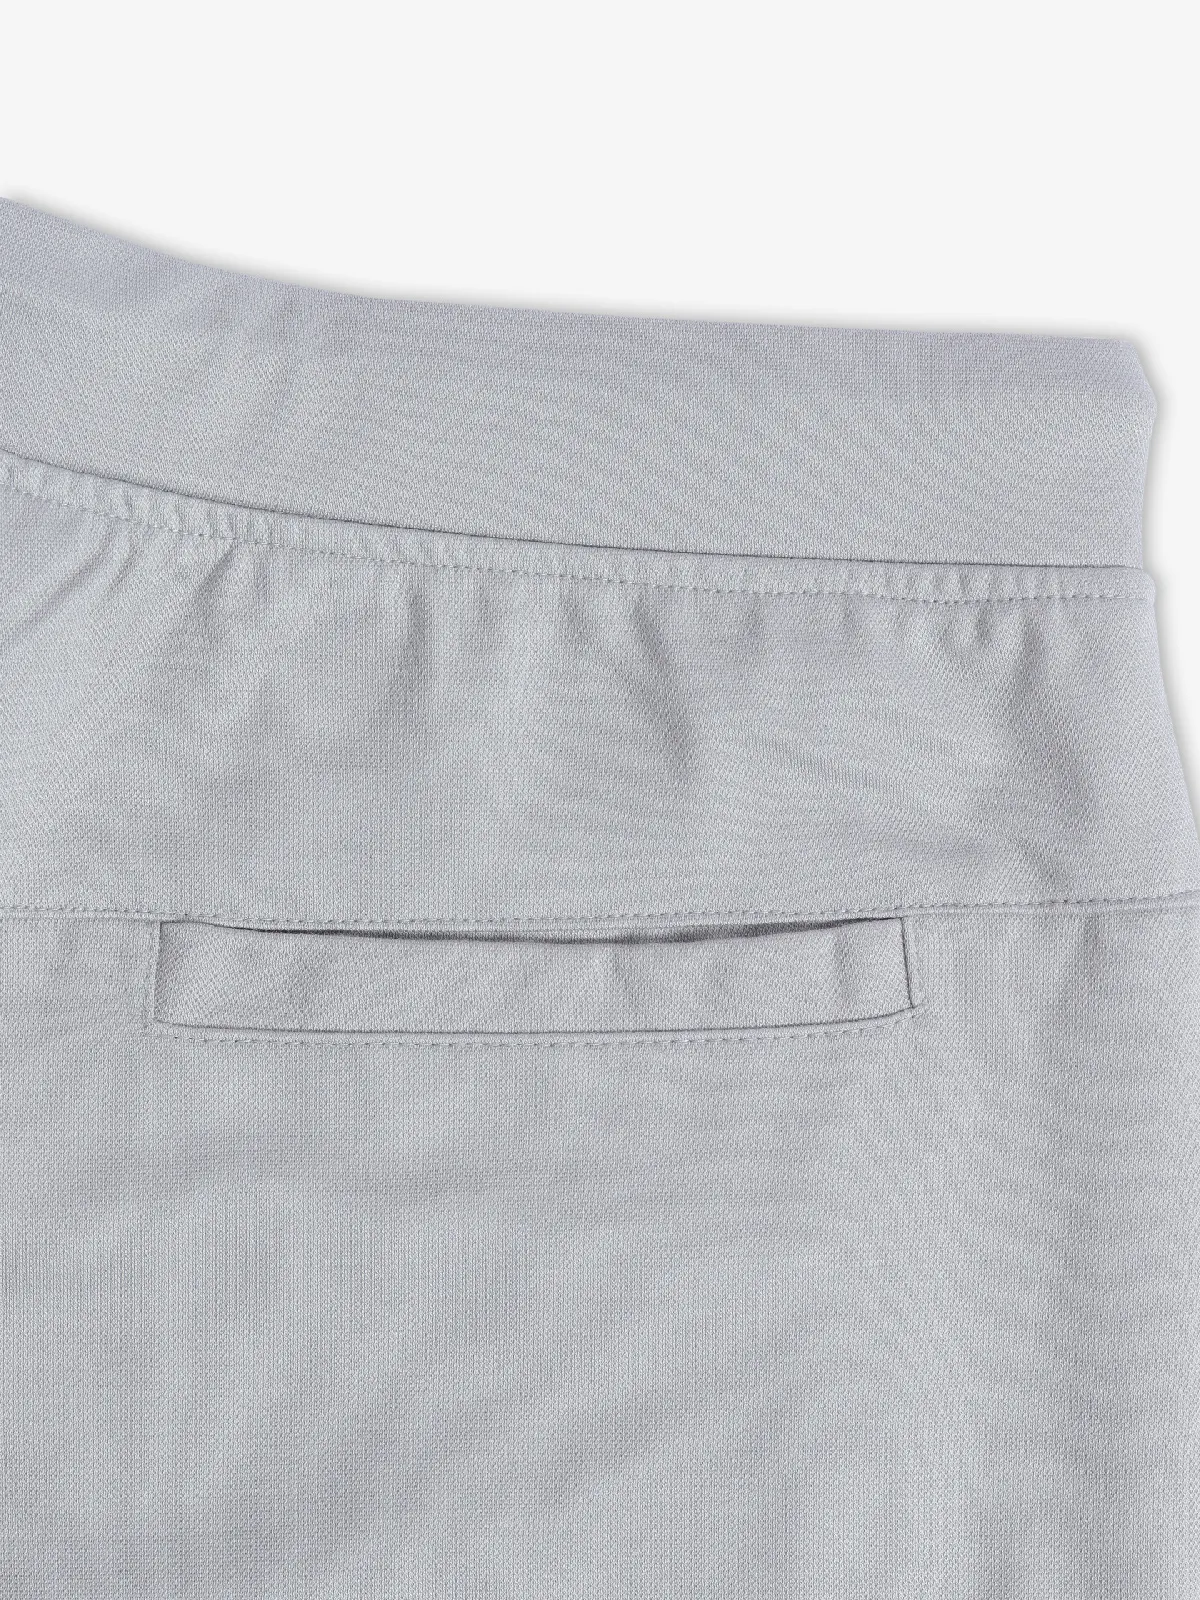 Freeze grey cotton plain track pant